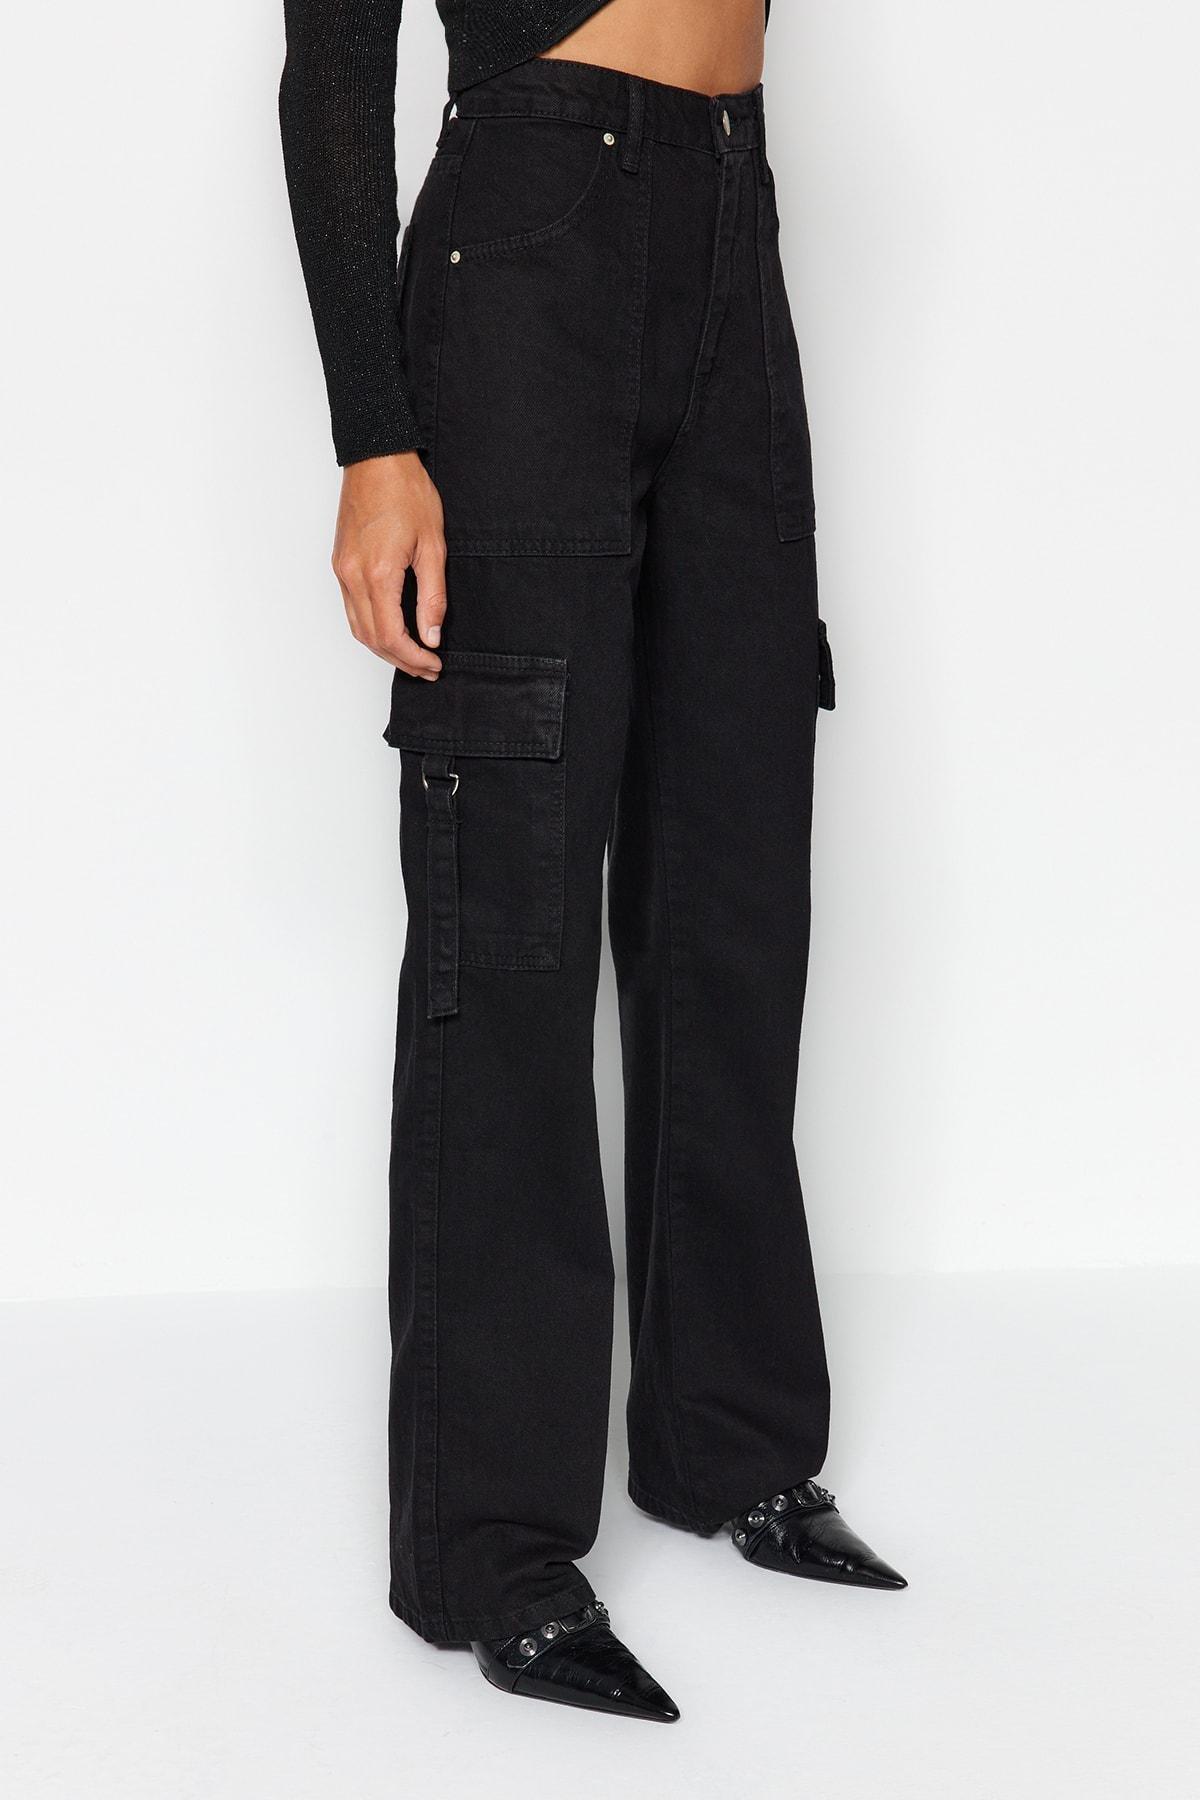 Trendyol - Black Loose Jeans